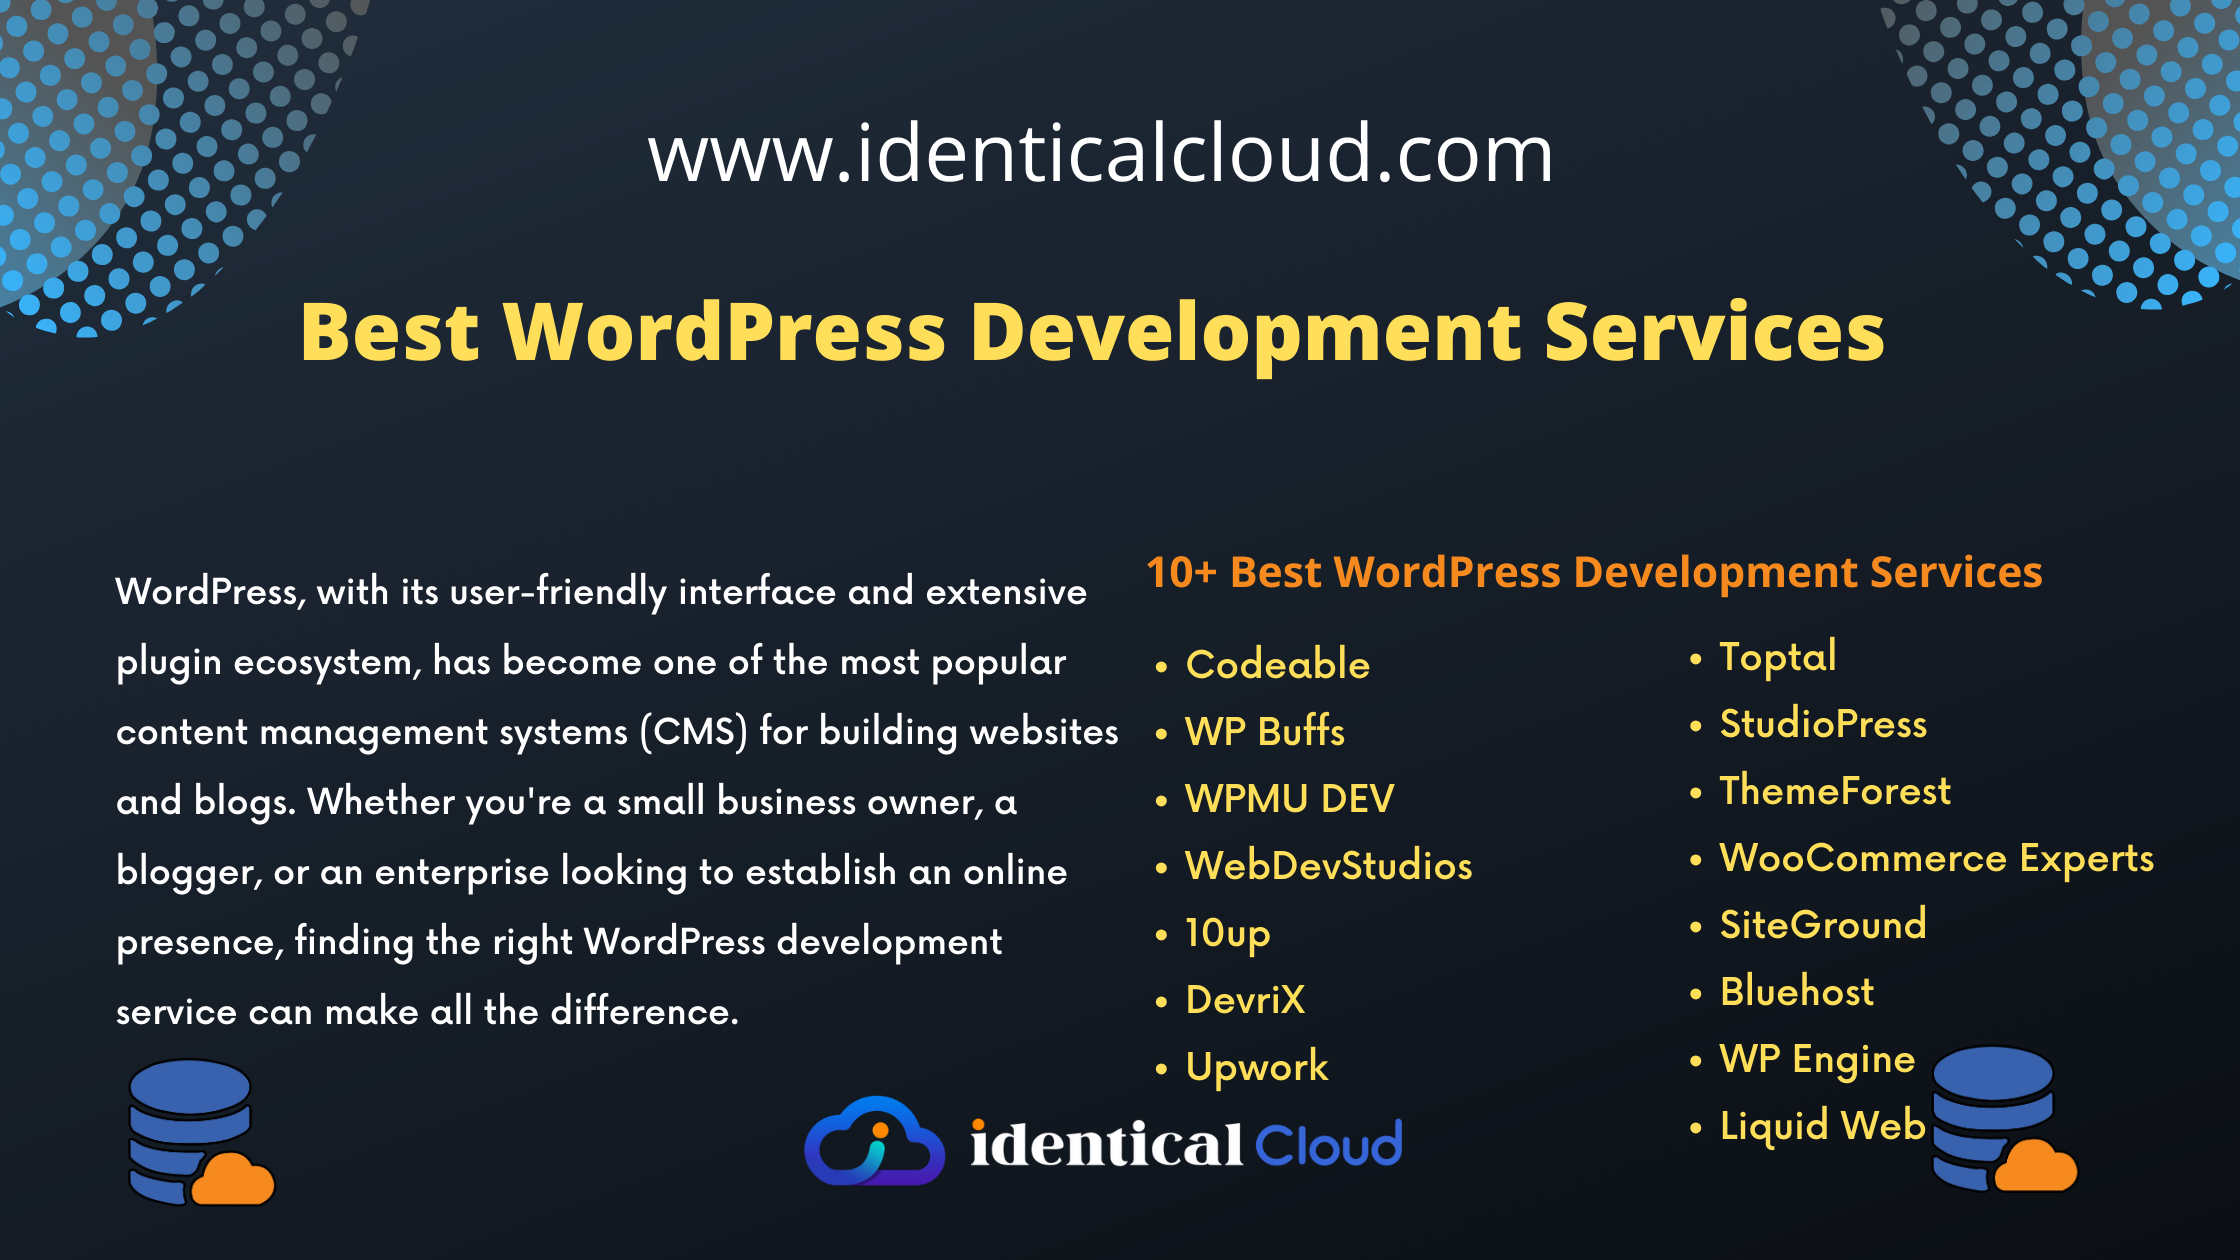 Best WordPress Development Services - identicalcloud.com